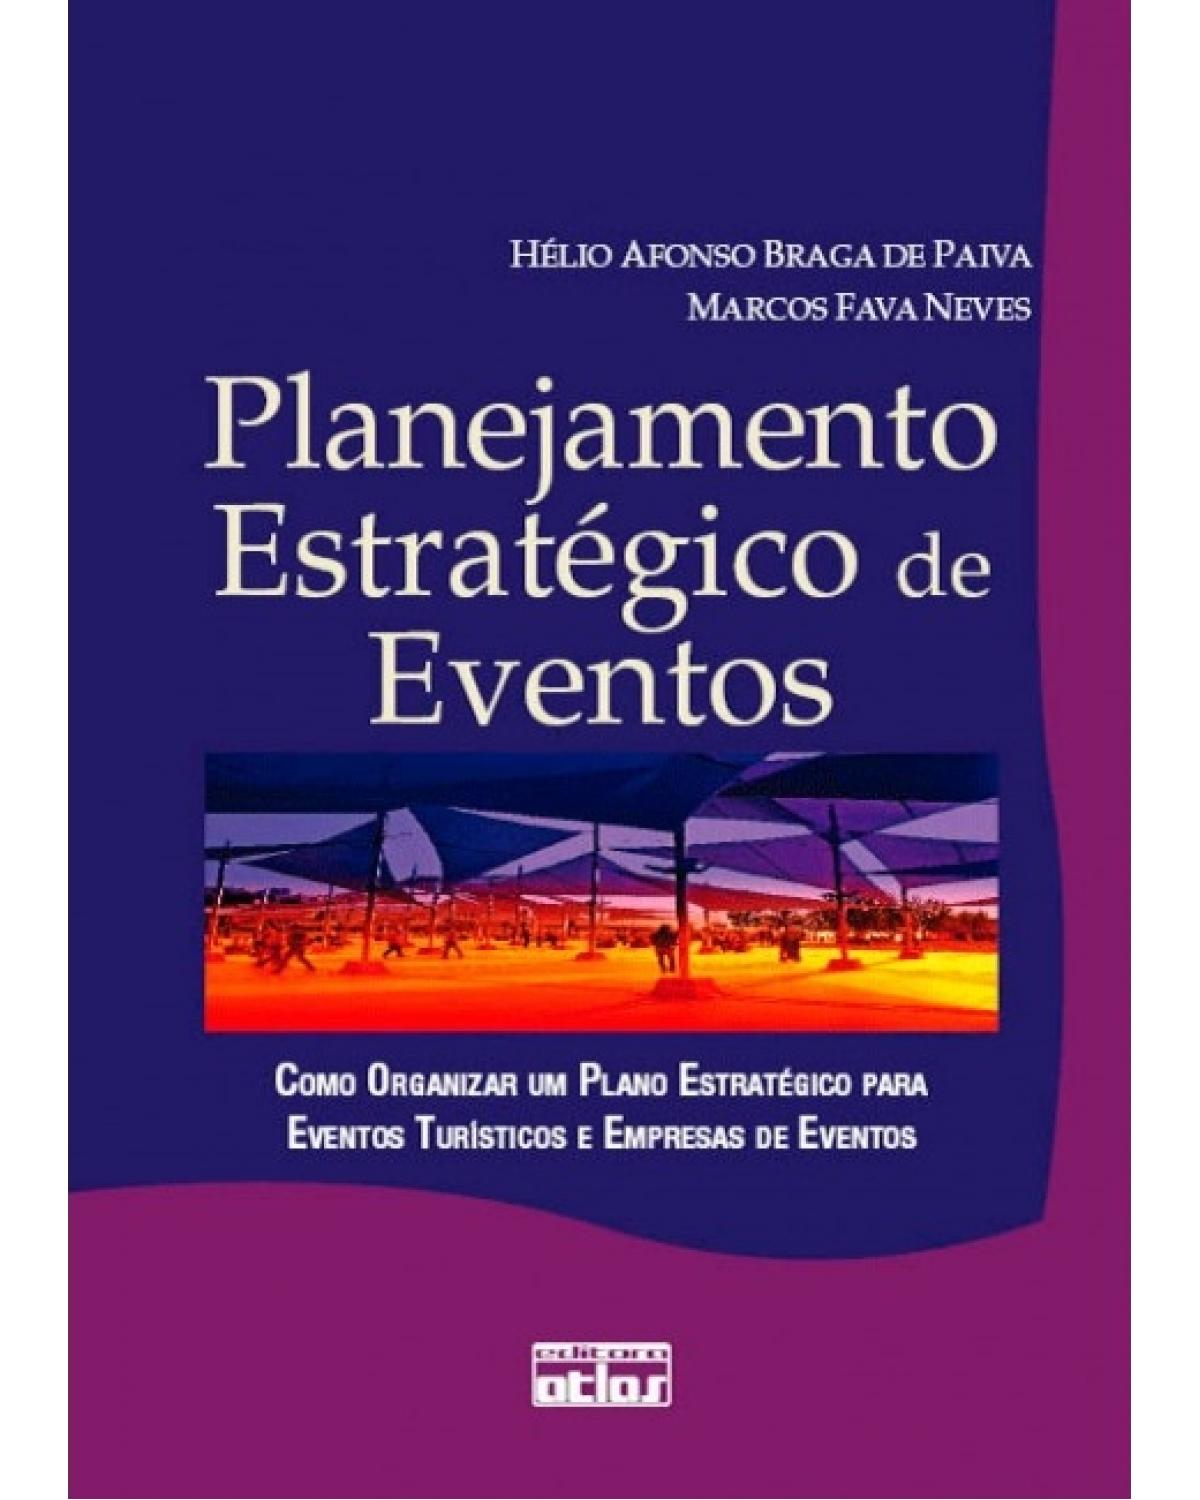 Planejamento estratégico de eventos - Como organizar um plano estratégico para eventos turísticos e empresas de eventos - 1ª Edição | 2008